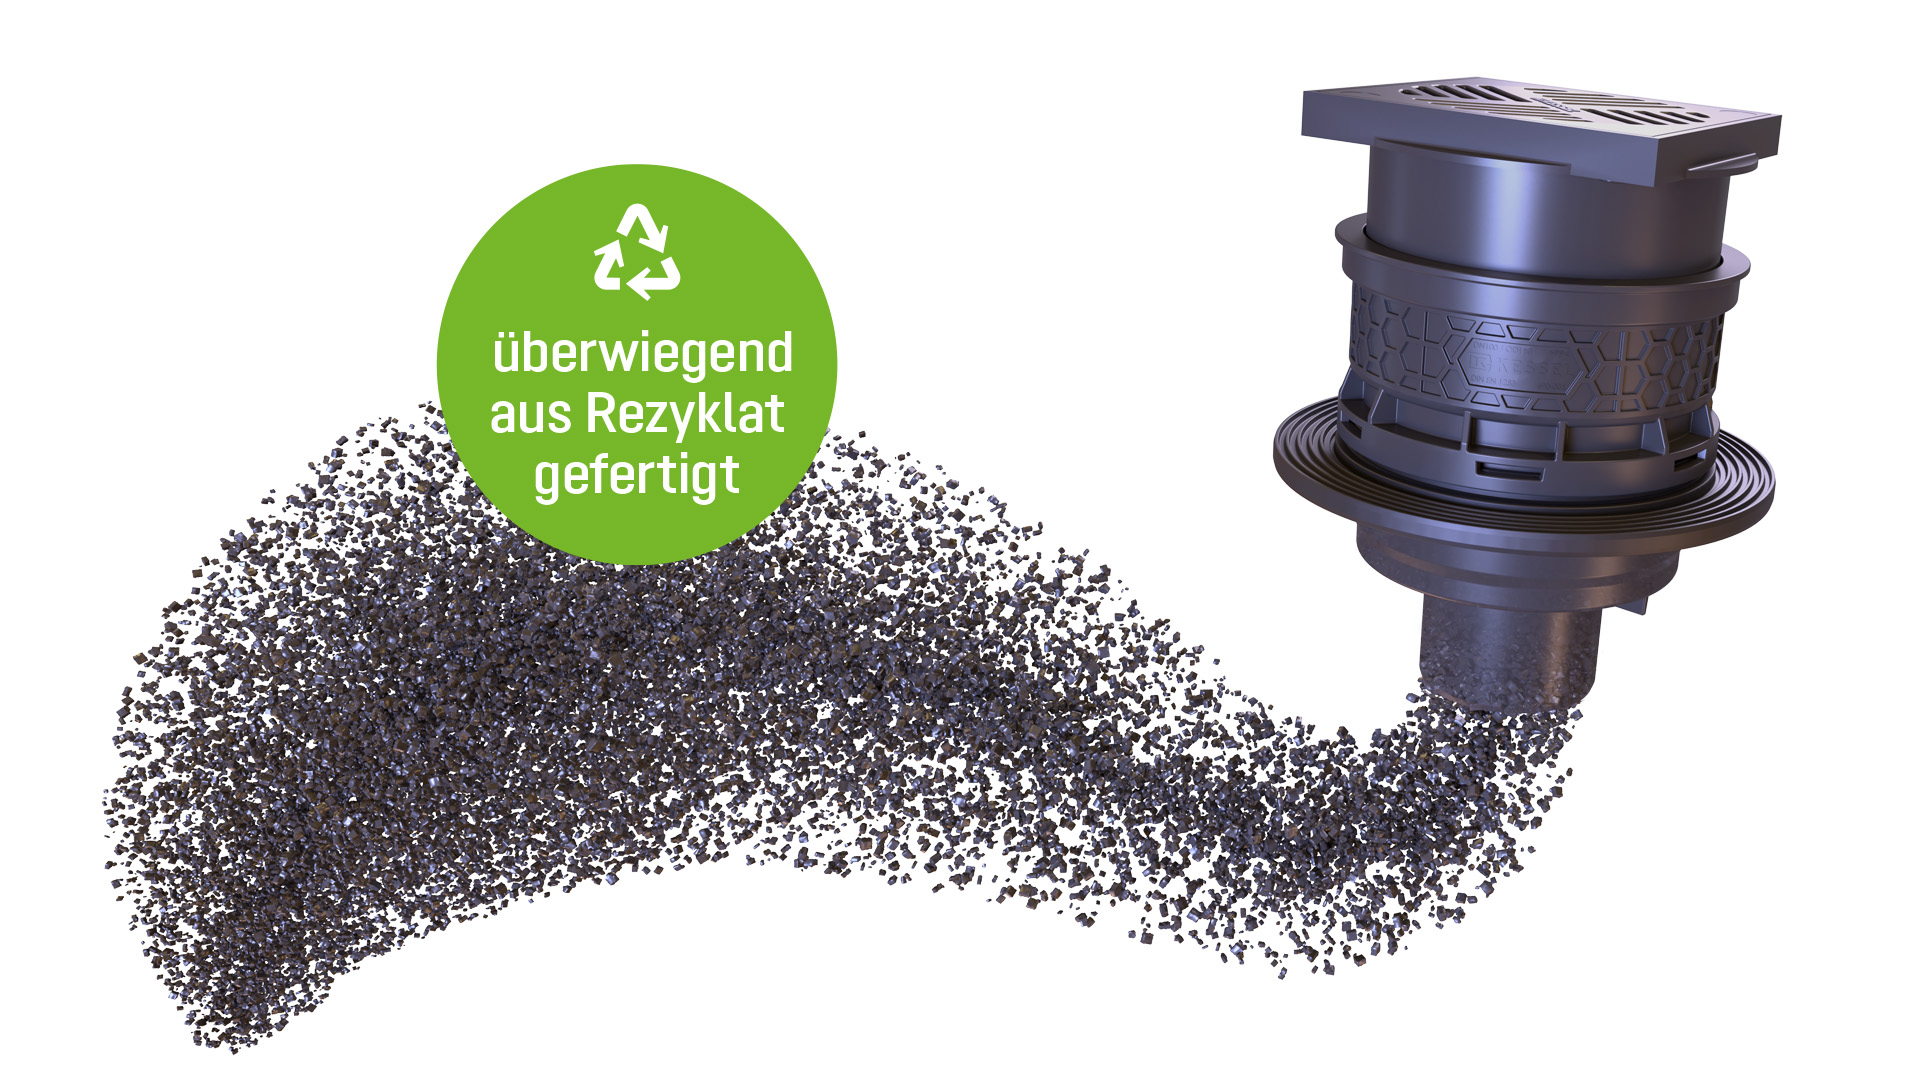 [Translate to Deutsch (CH):] Kellerablauf zum überwiegenden Teil aus recyceltem Material gefertigt.